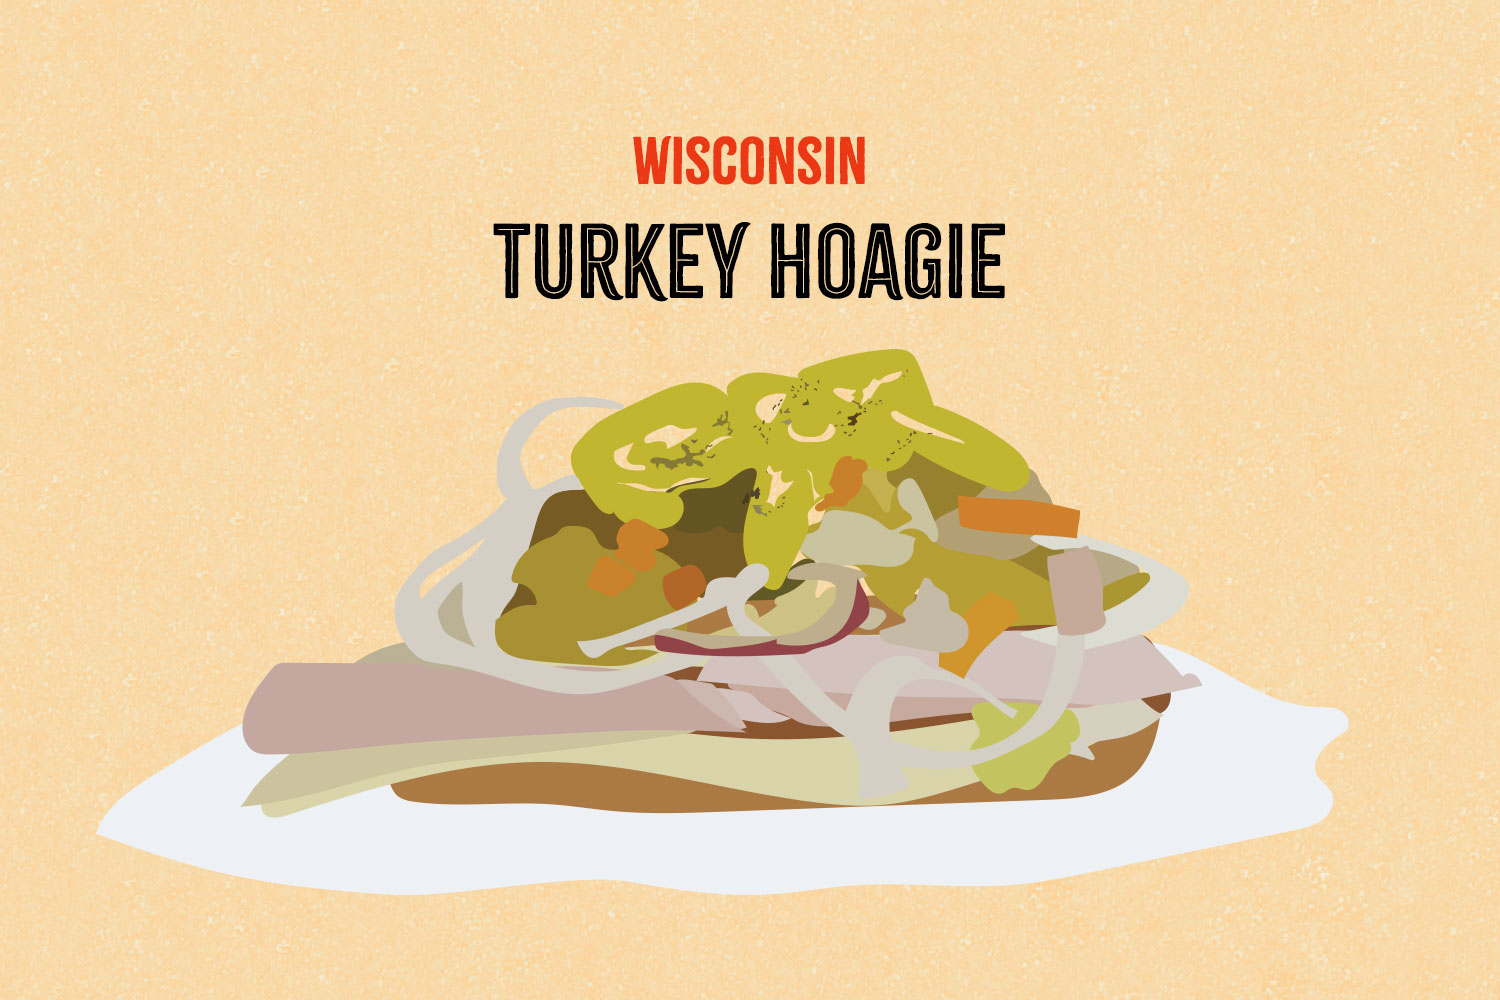 Turkey Hoagie illustration